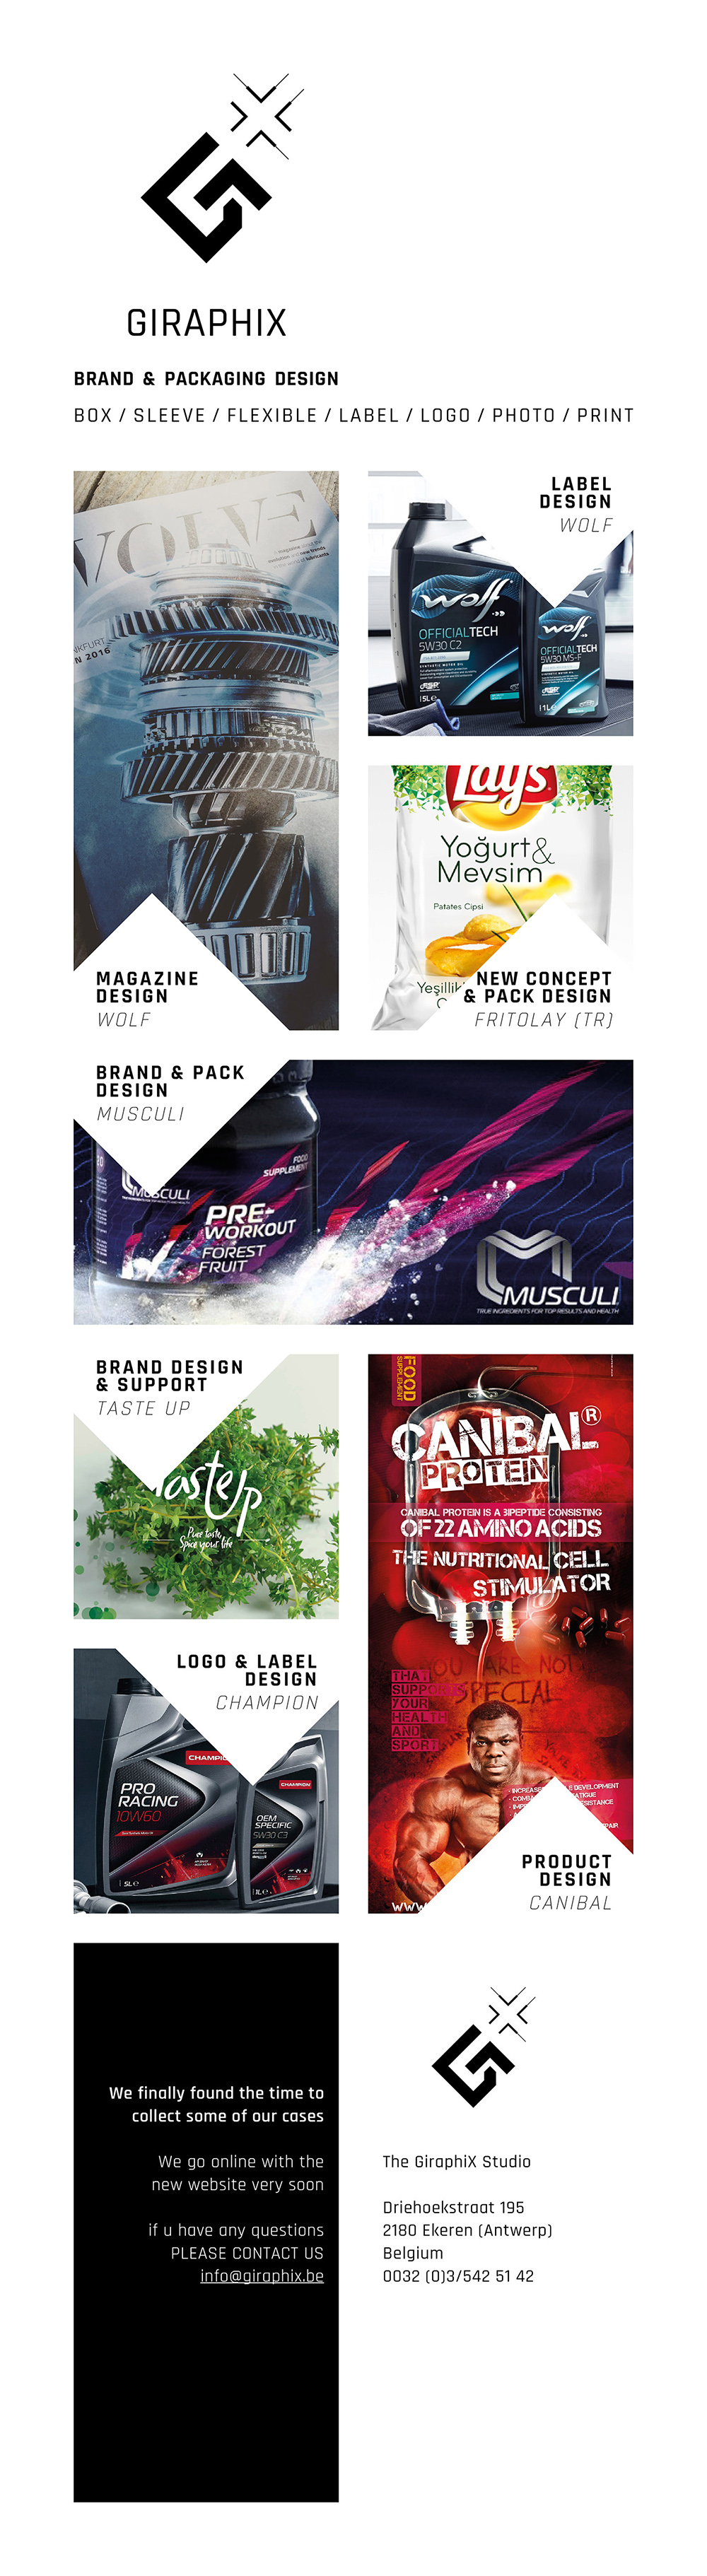 Giraphix | Brand & Packaging Design